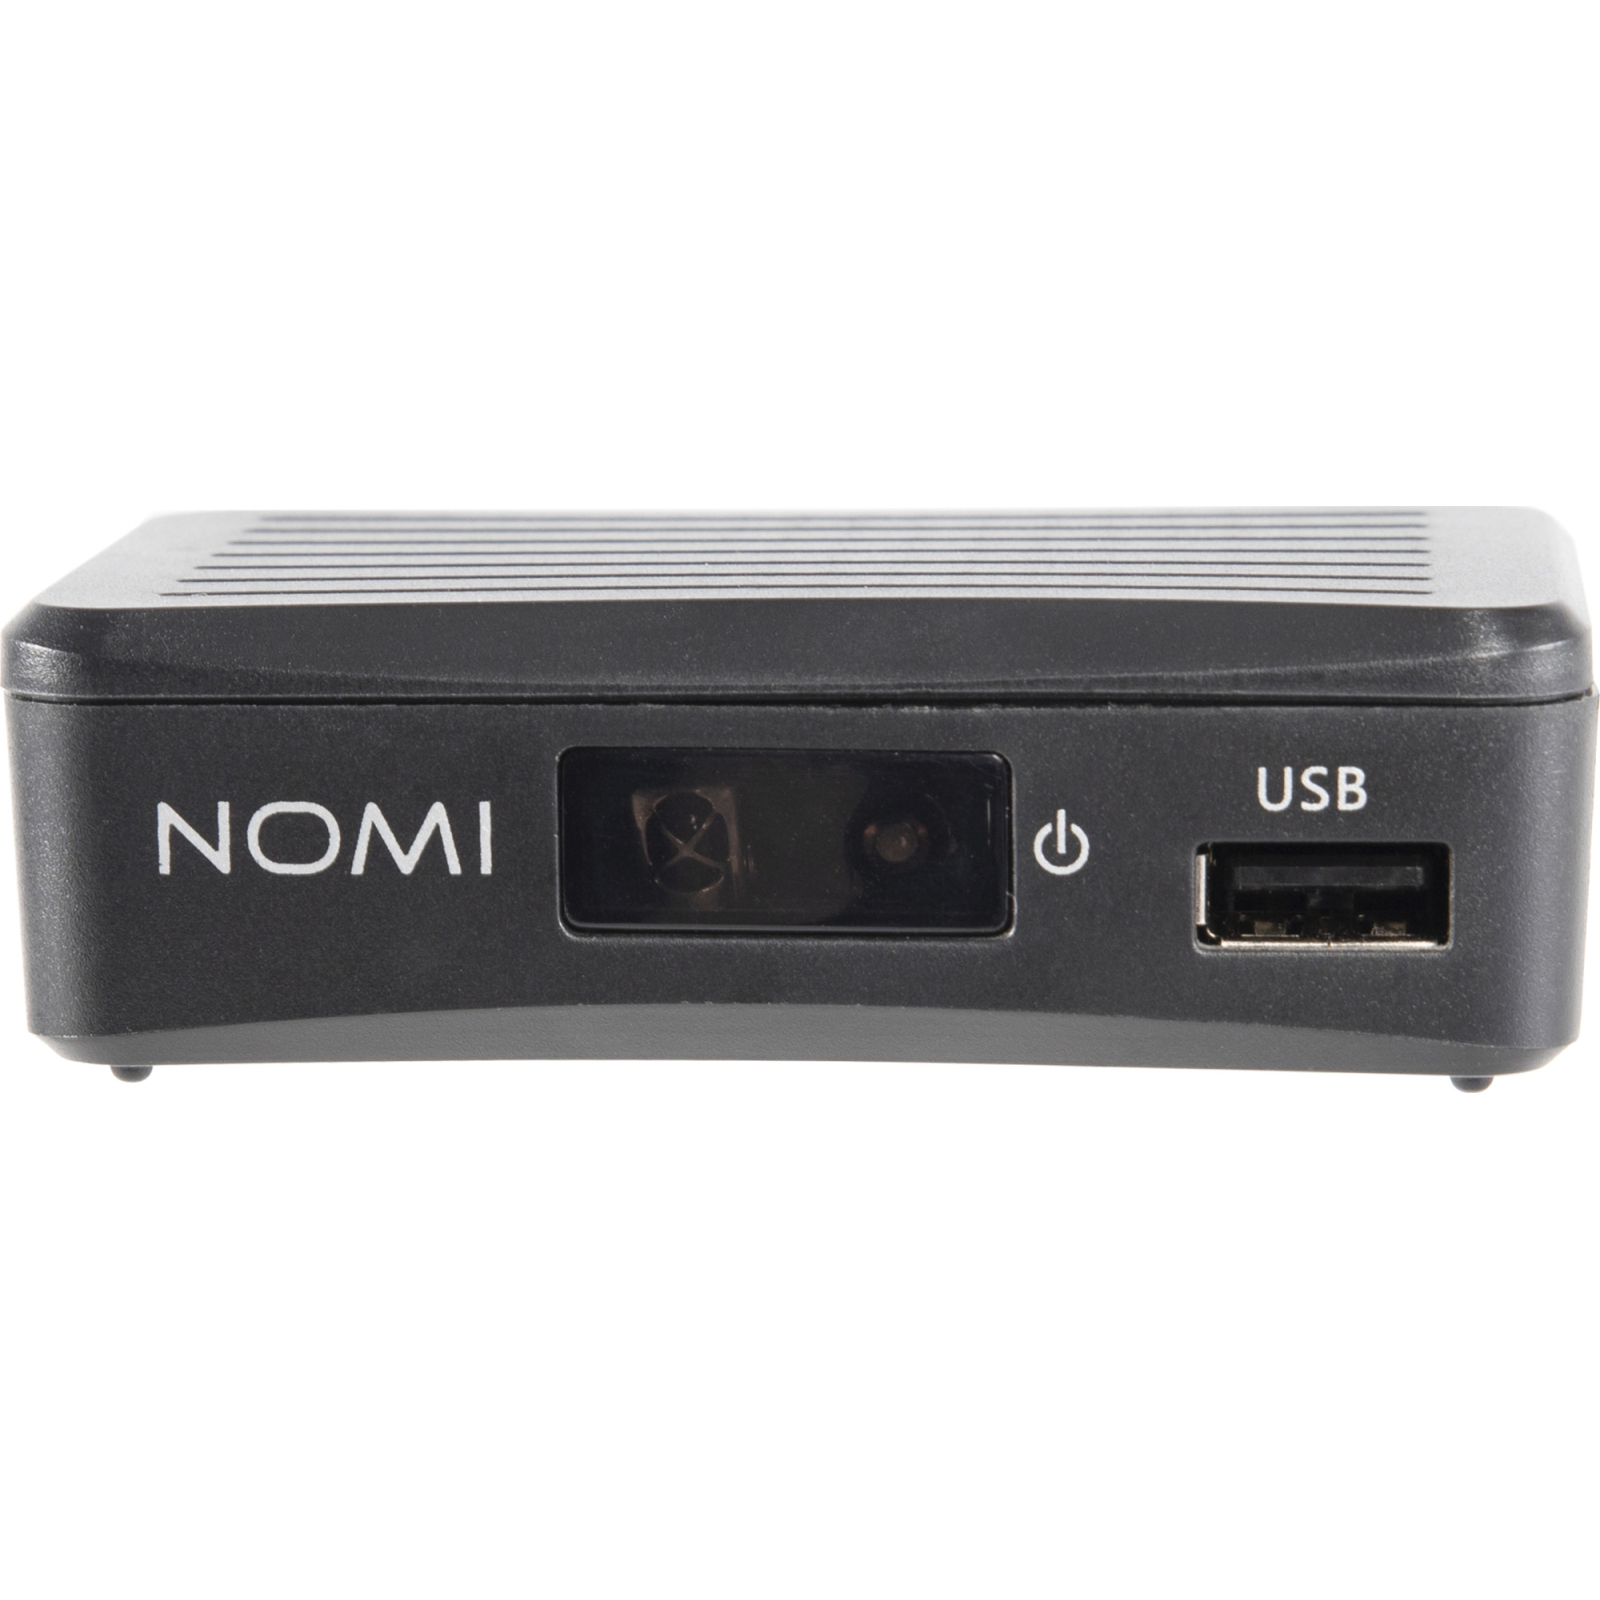 ТВ тюнер Nomi DVB-T2 T203 (425704) изображение 2